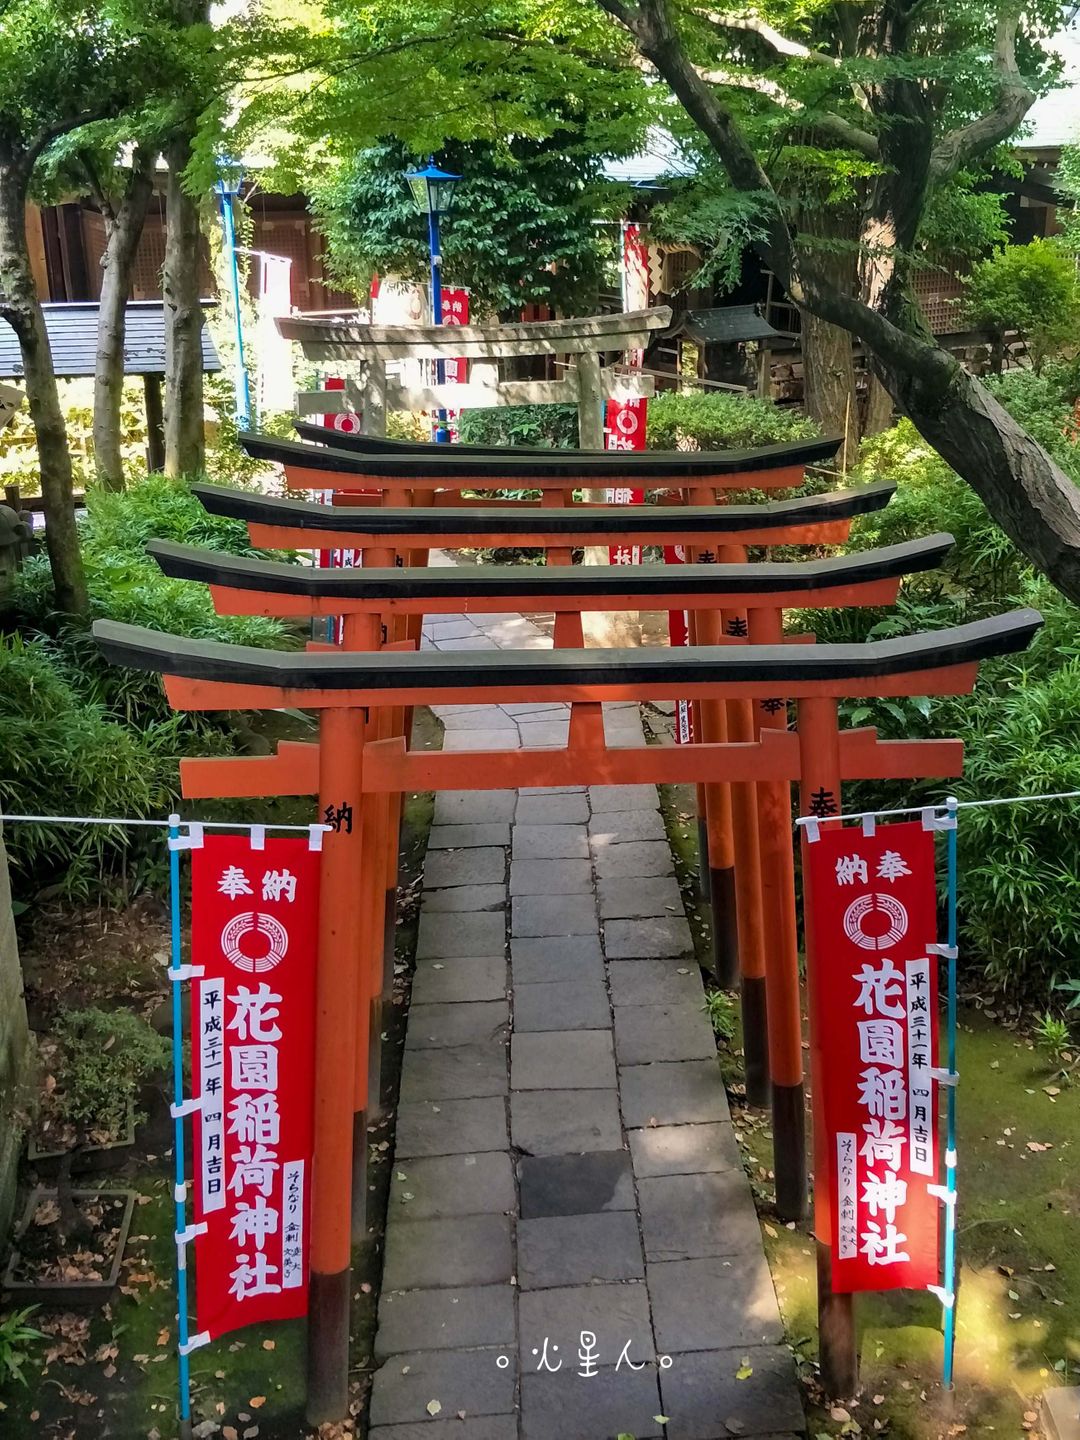 花園稻荷神社